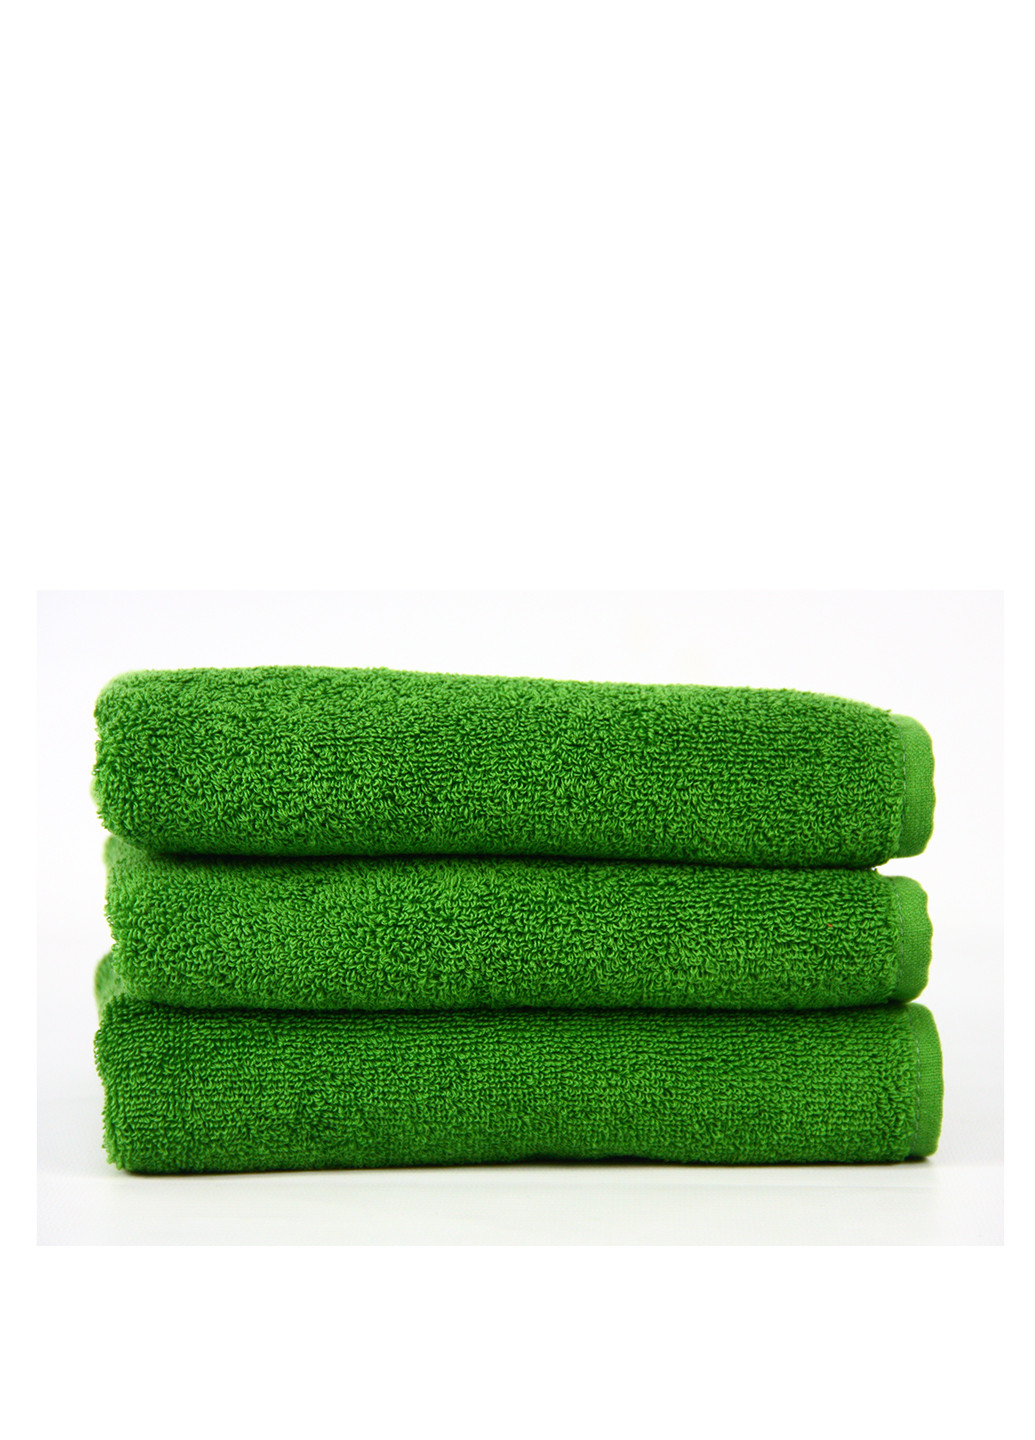 Maisonette полотенце (1 шт.), 34х80 см однотонный зеленый производство - Турция